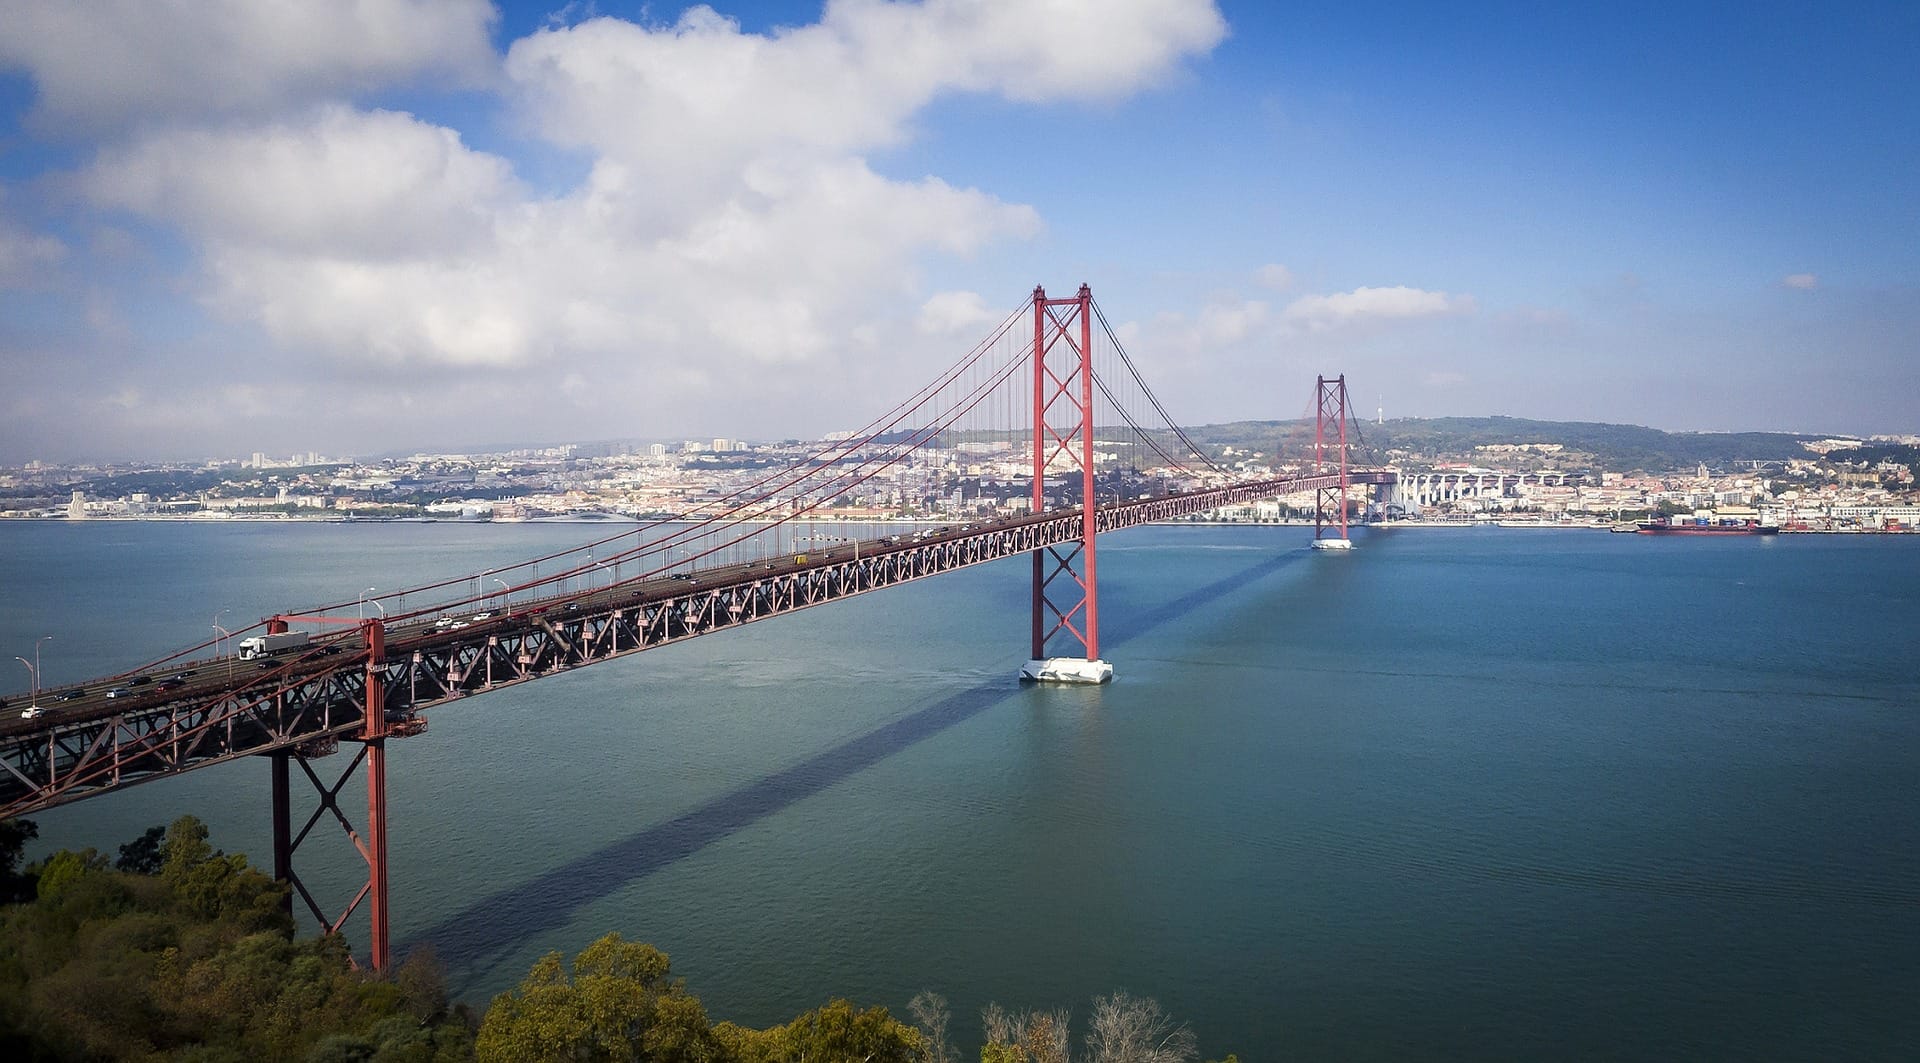 Ponte 25 de Abril: Lissabon sieht aus wie ein europäischer Zwilling von San Francisco. Sogar die "Ponte 25 de Abril" hat verblüffende Ähnlichkeit mit der Golden Gate Bridge.